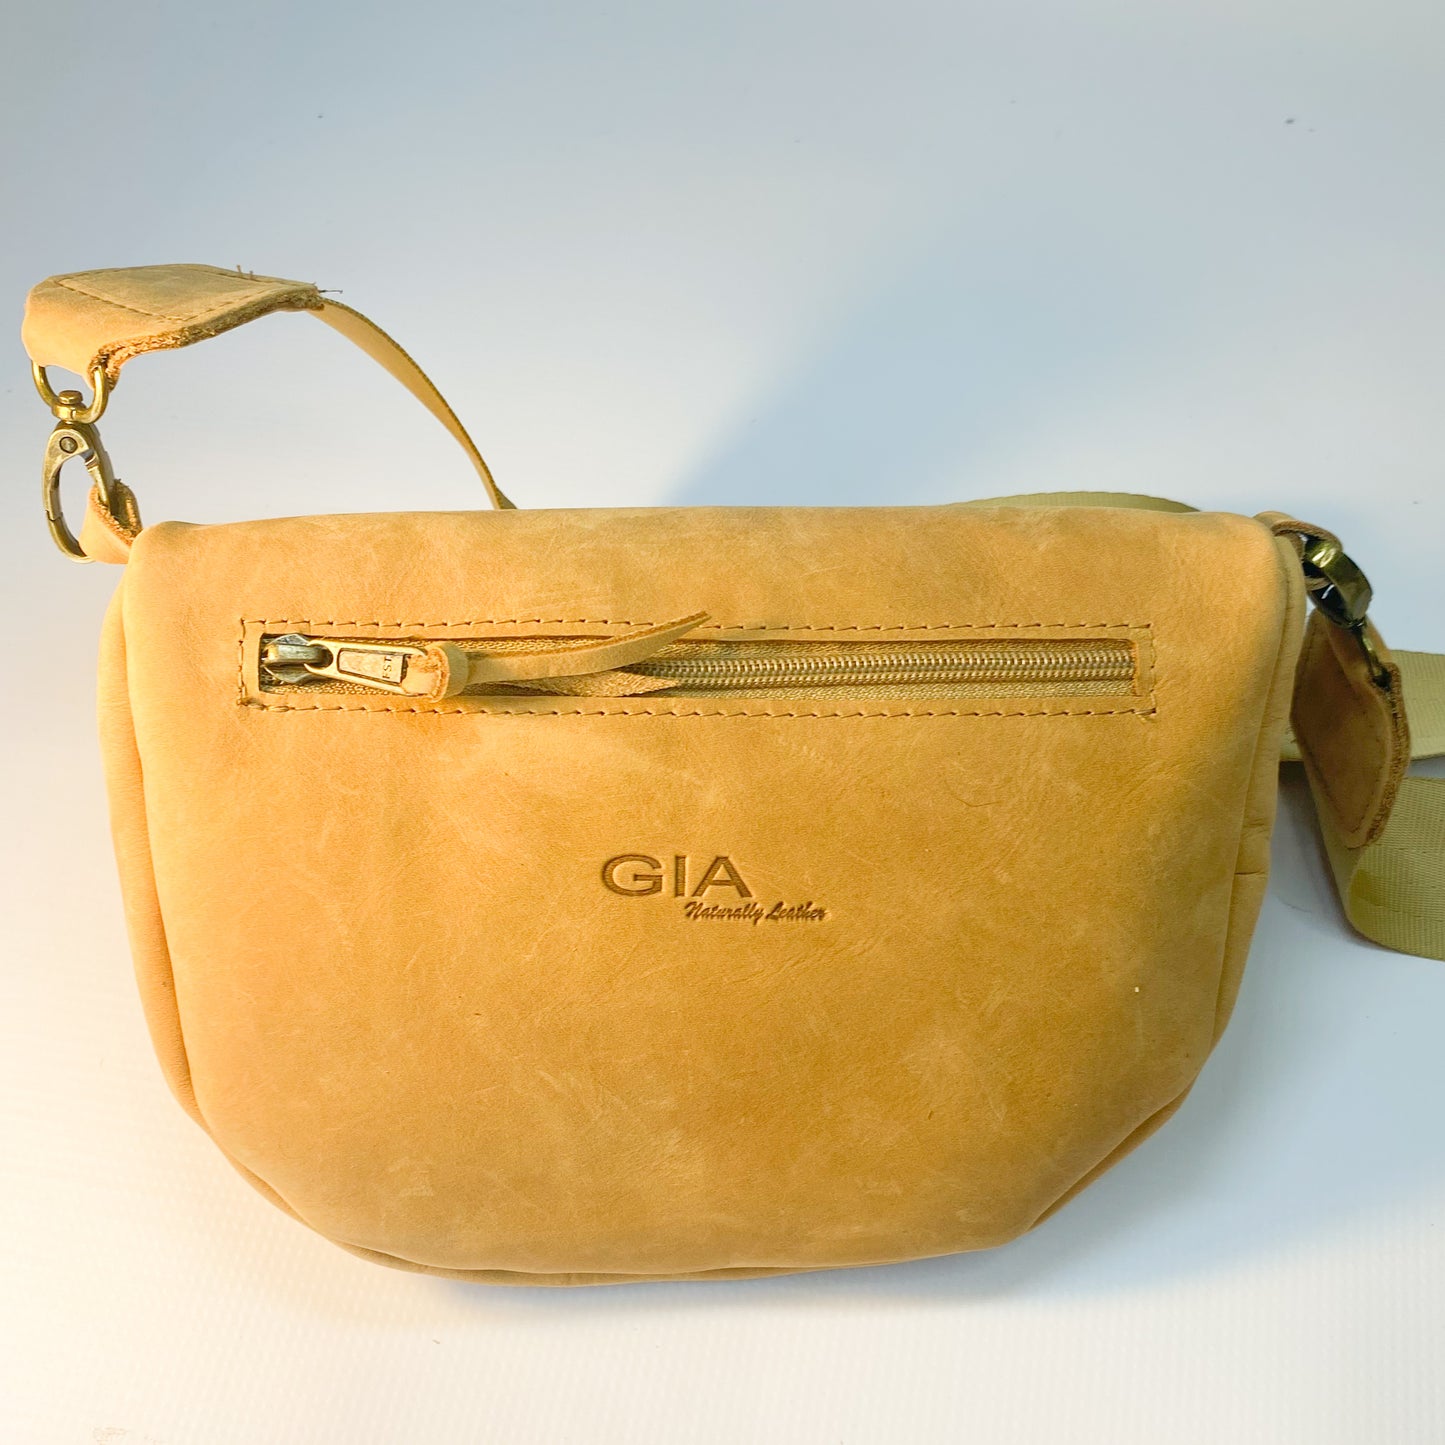 Gia leather tan moonbag